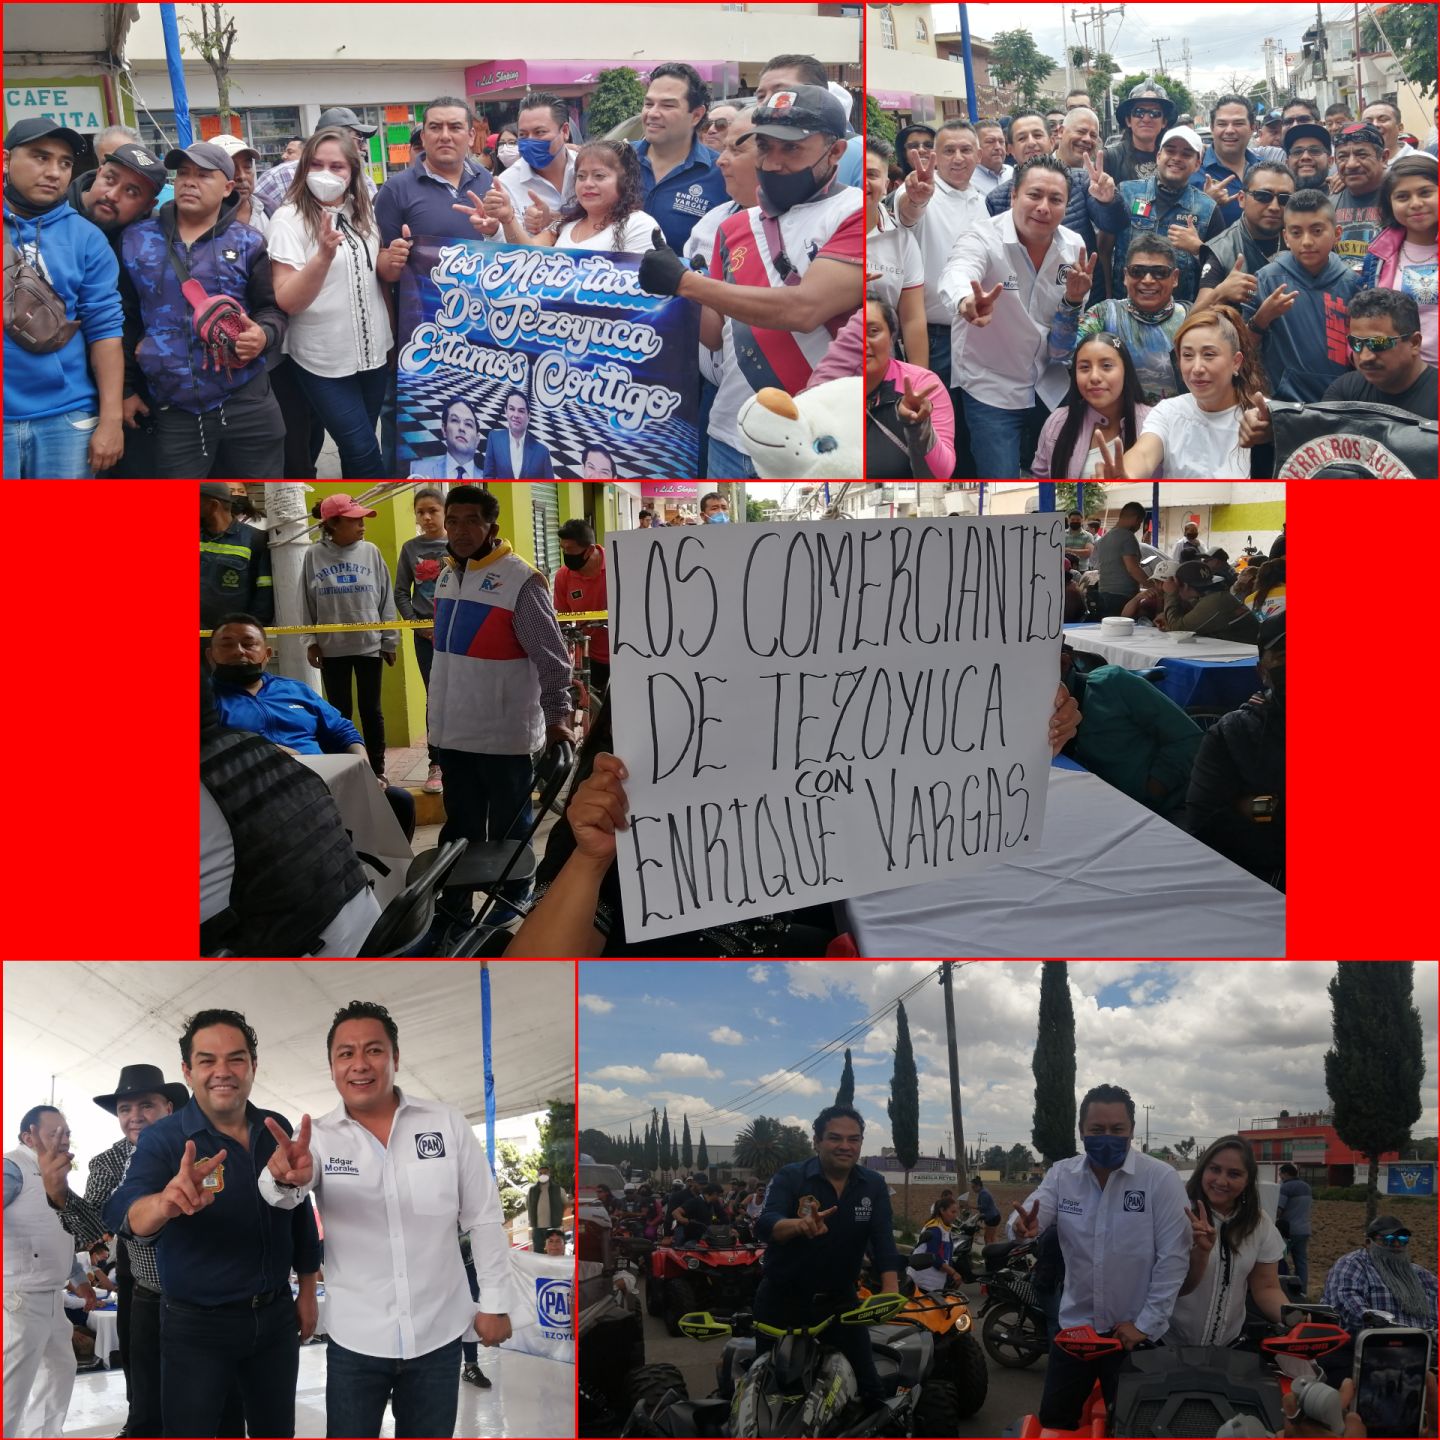 Tezoyuca respalda a Enrique Vargas a la gobernatura 2023 :Edgar Morales 